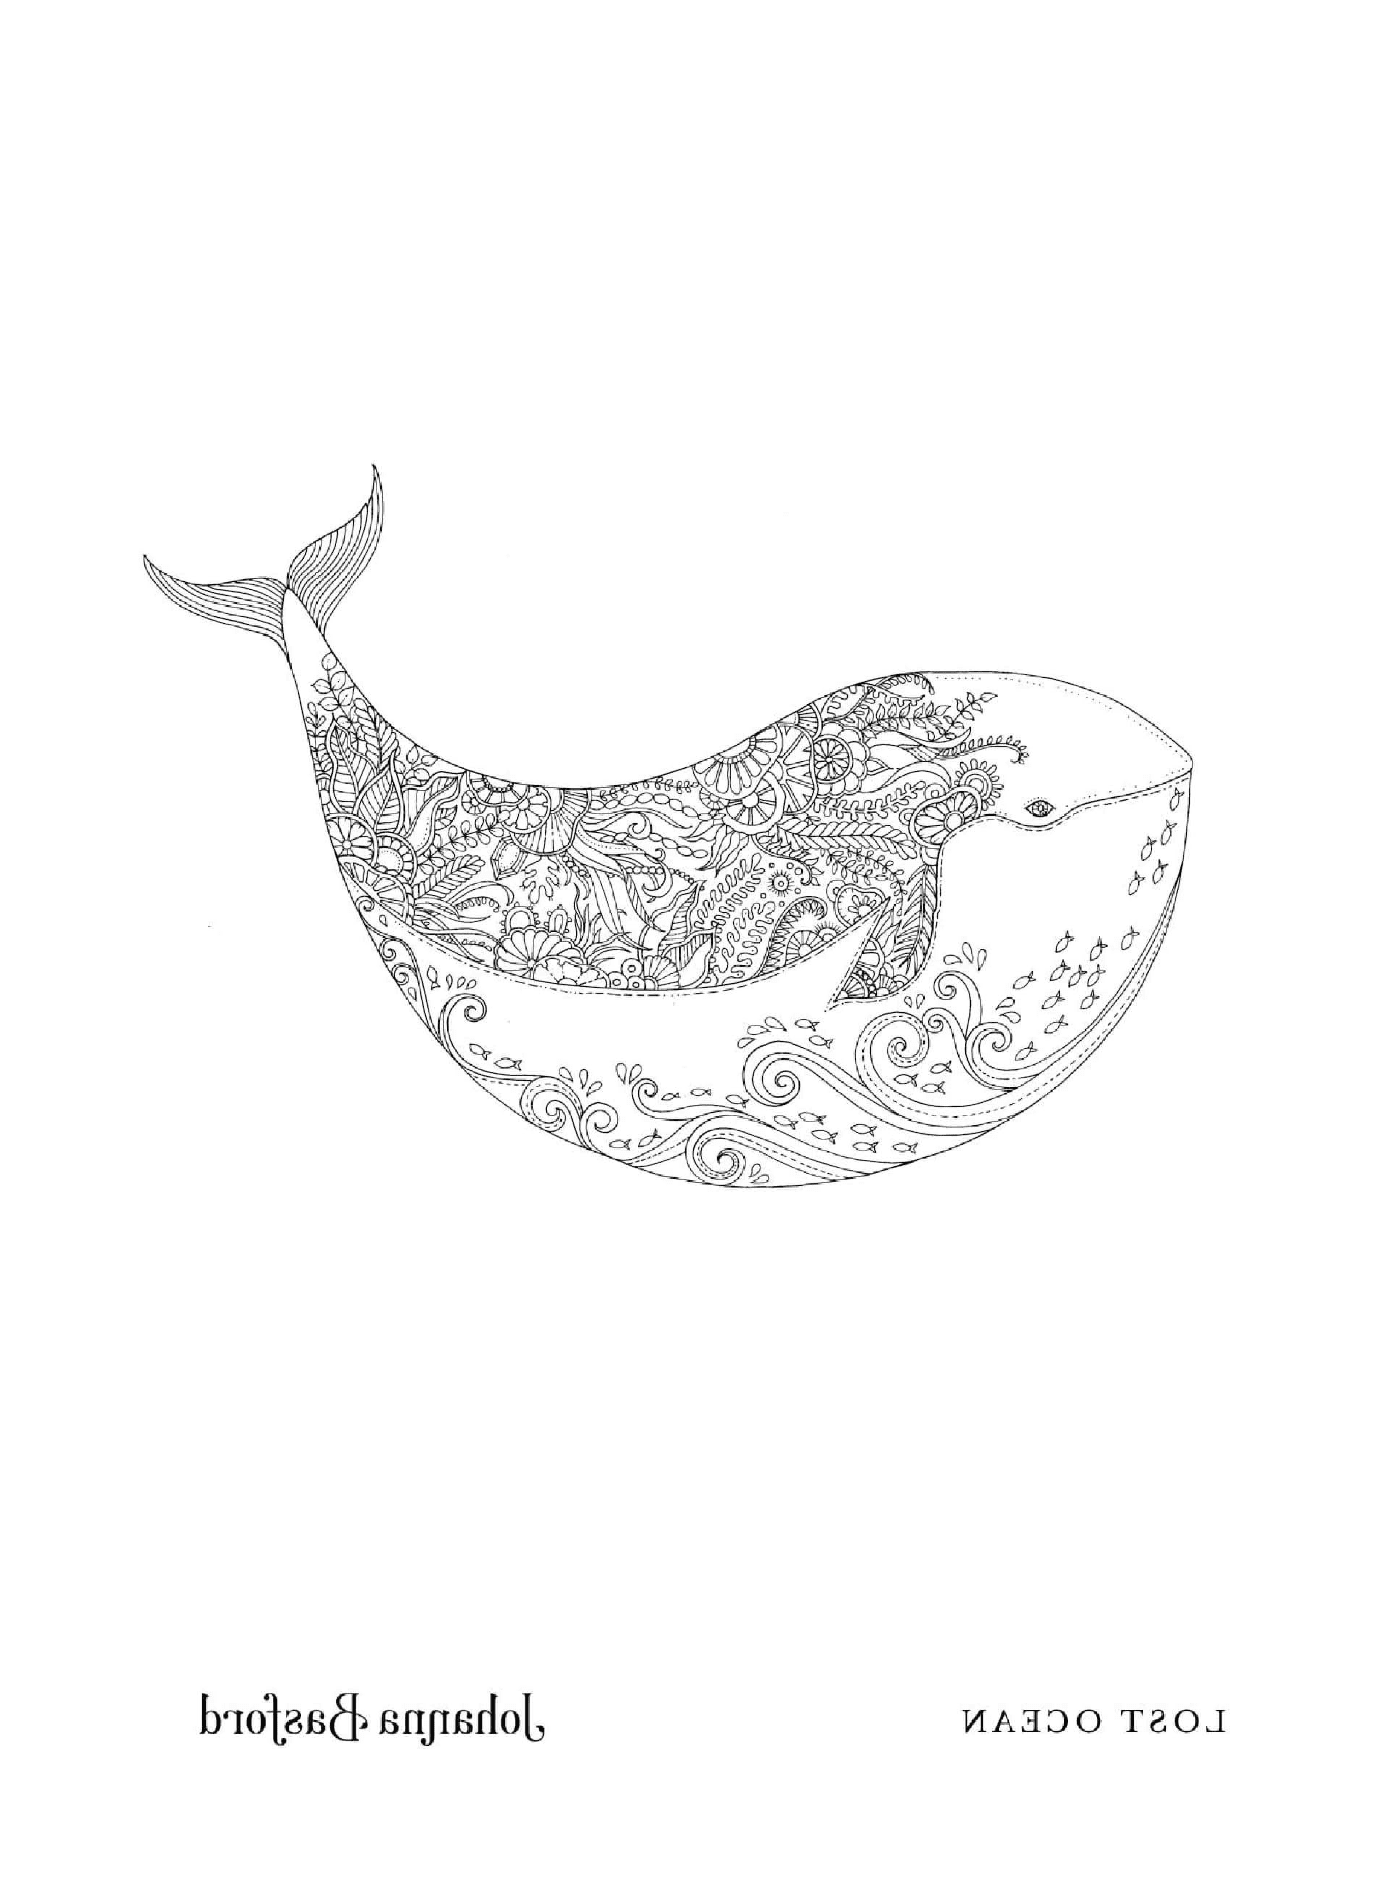   Une baleine avec un motif floral 